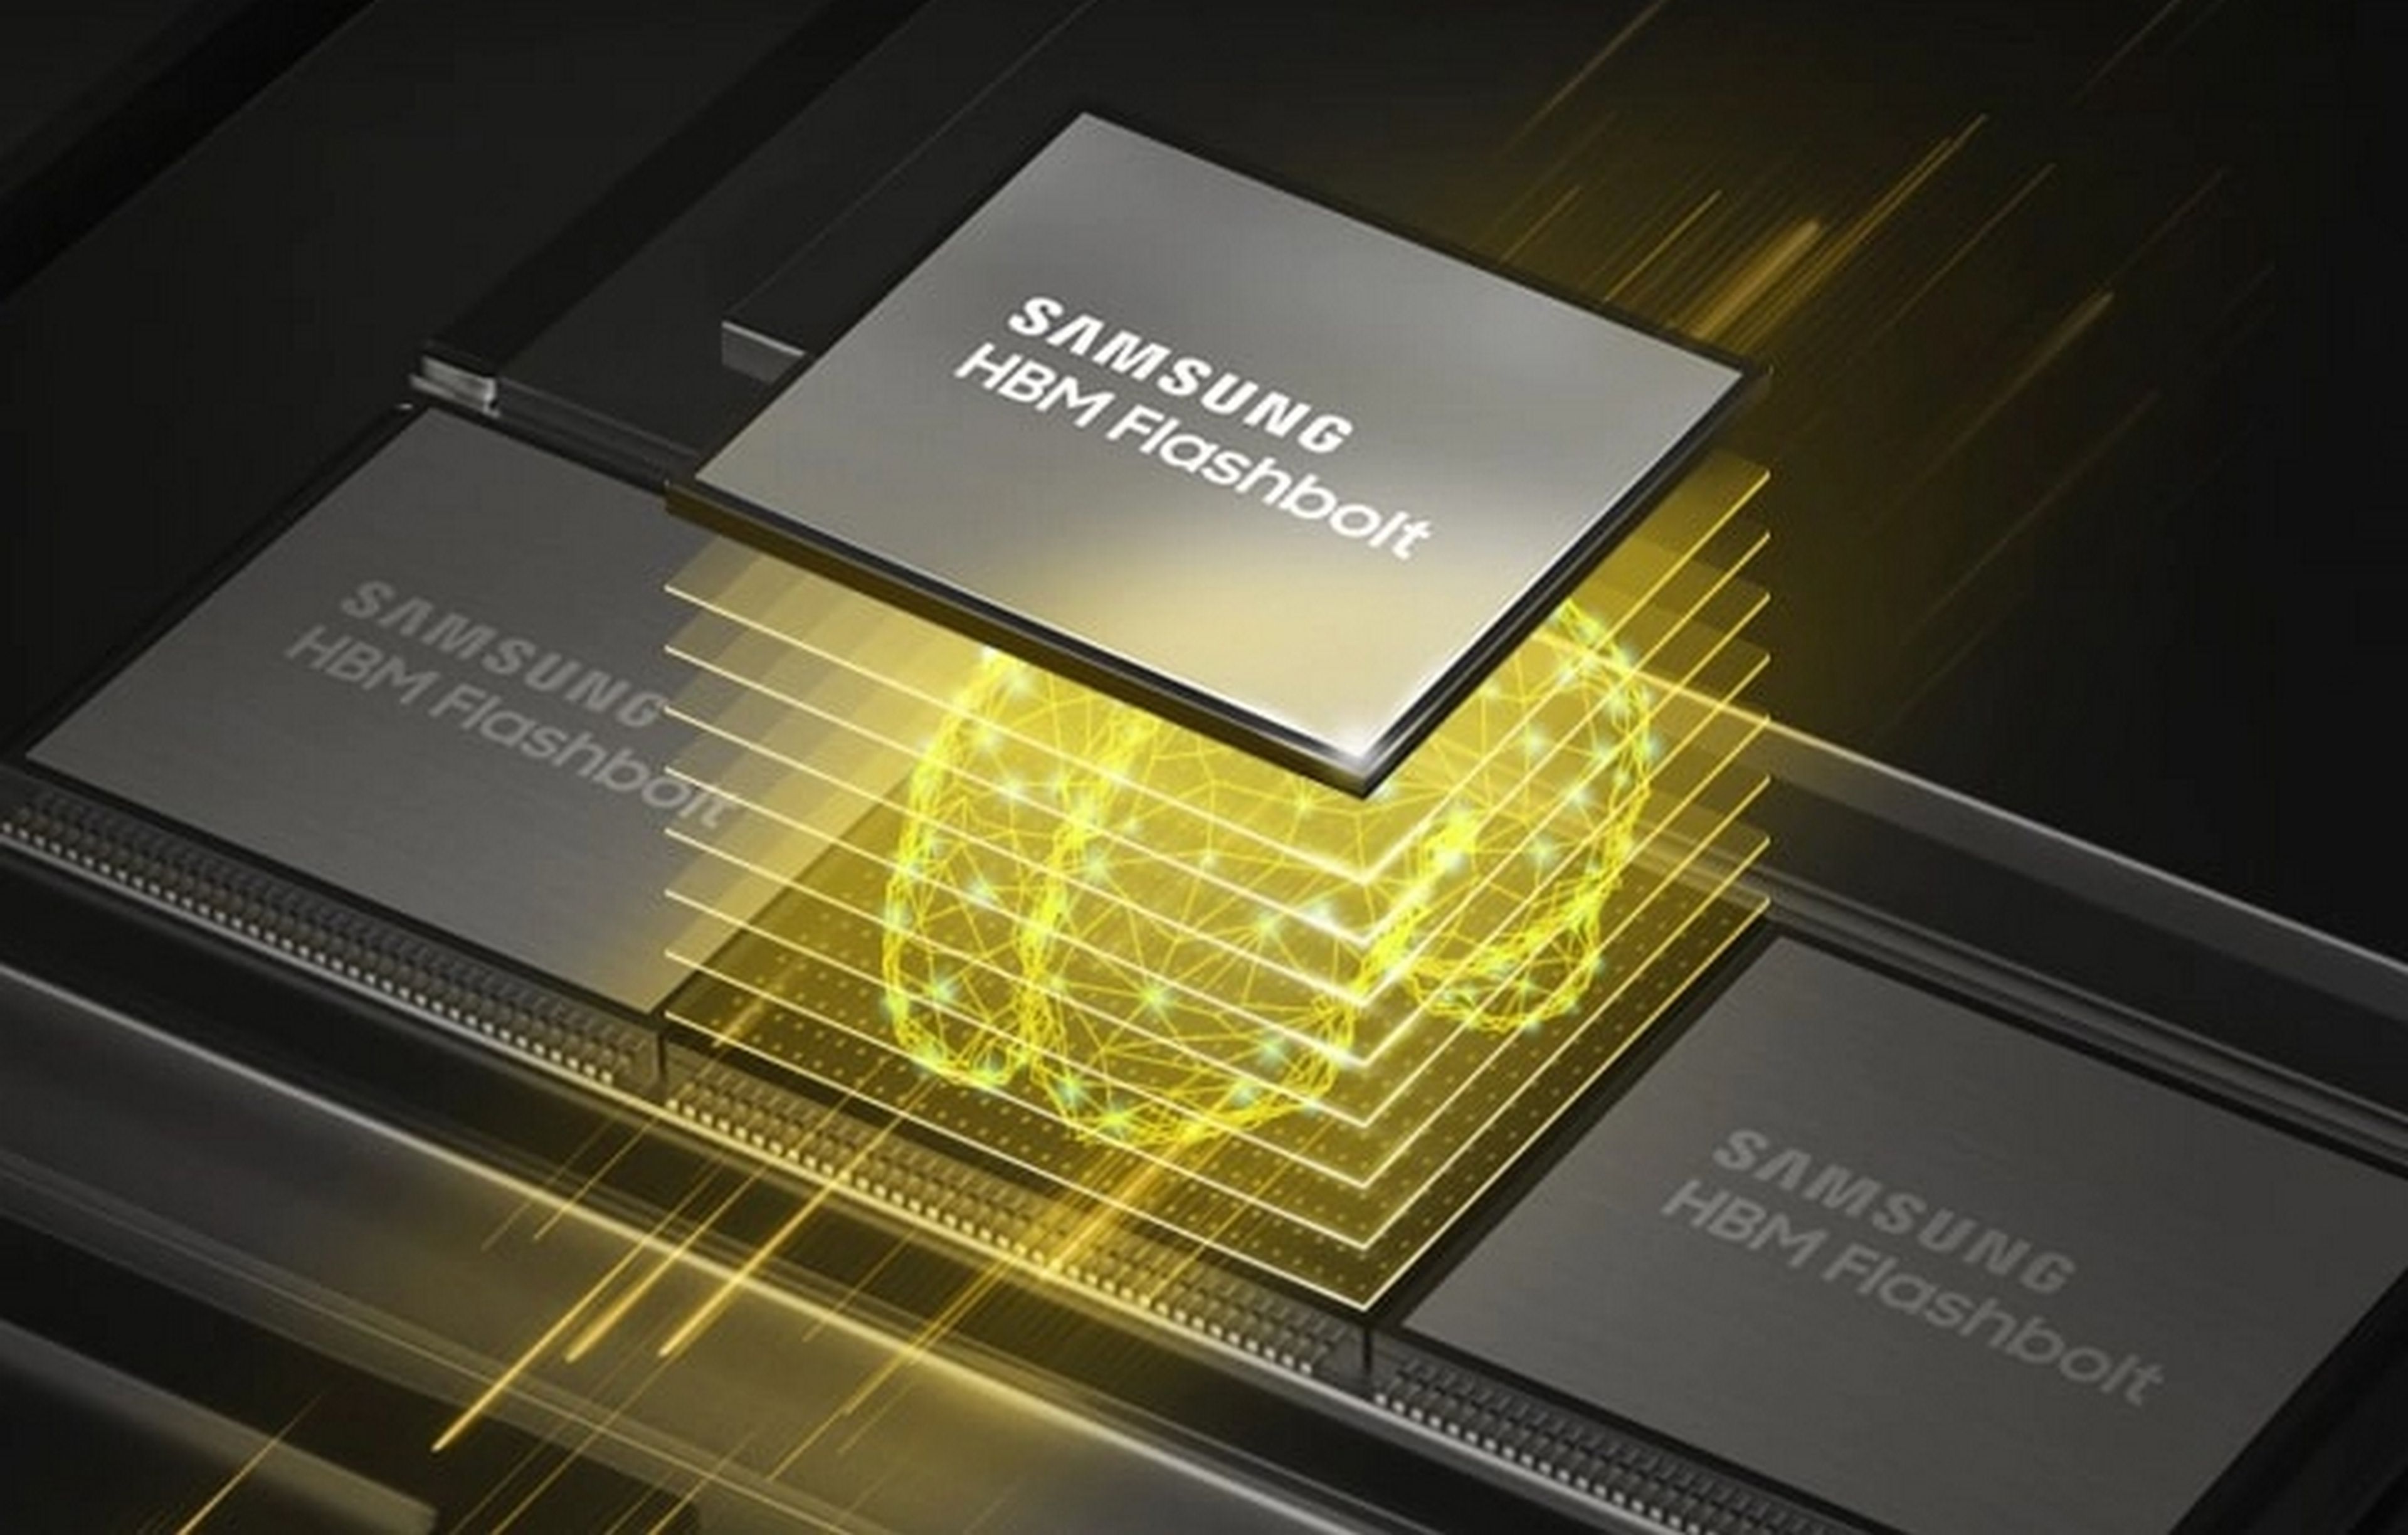 Samsung presenta la nueva memoria FIMDRAM, con inteligencia artificial integrada en la propia memoria